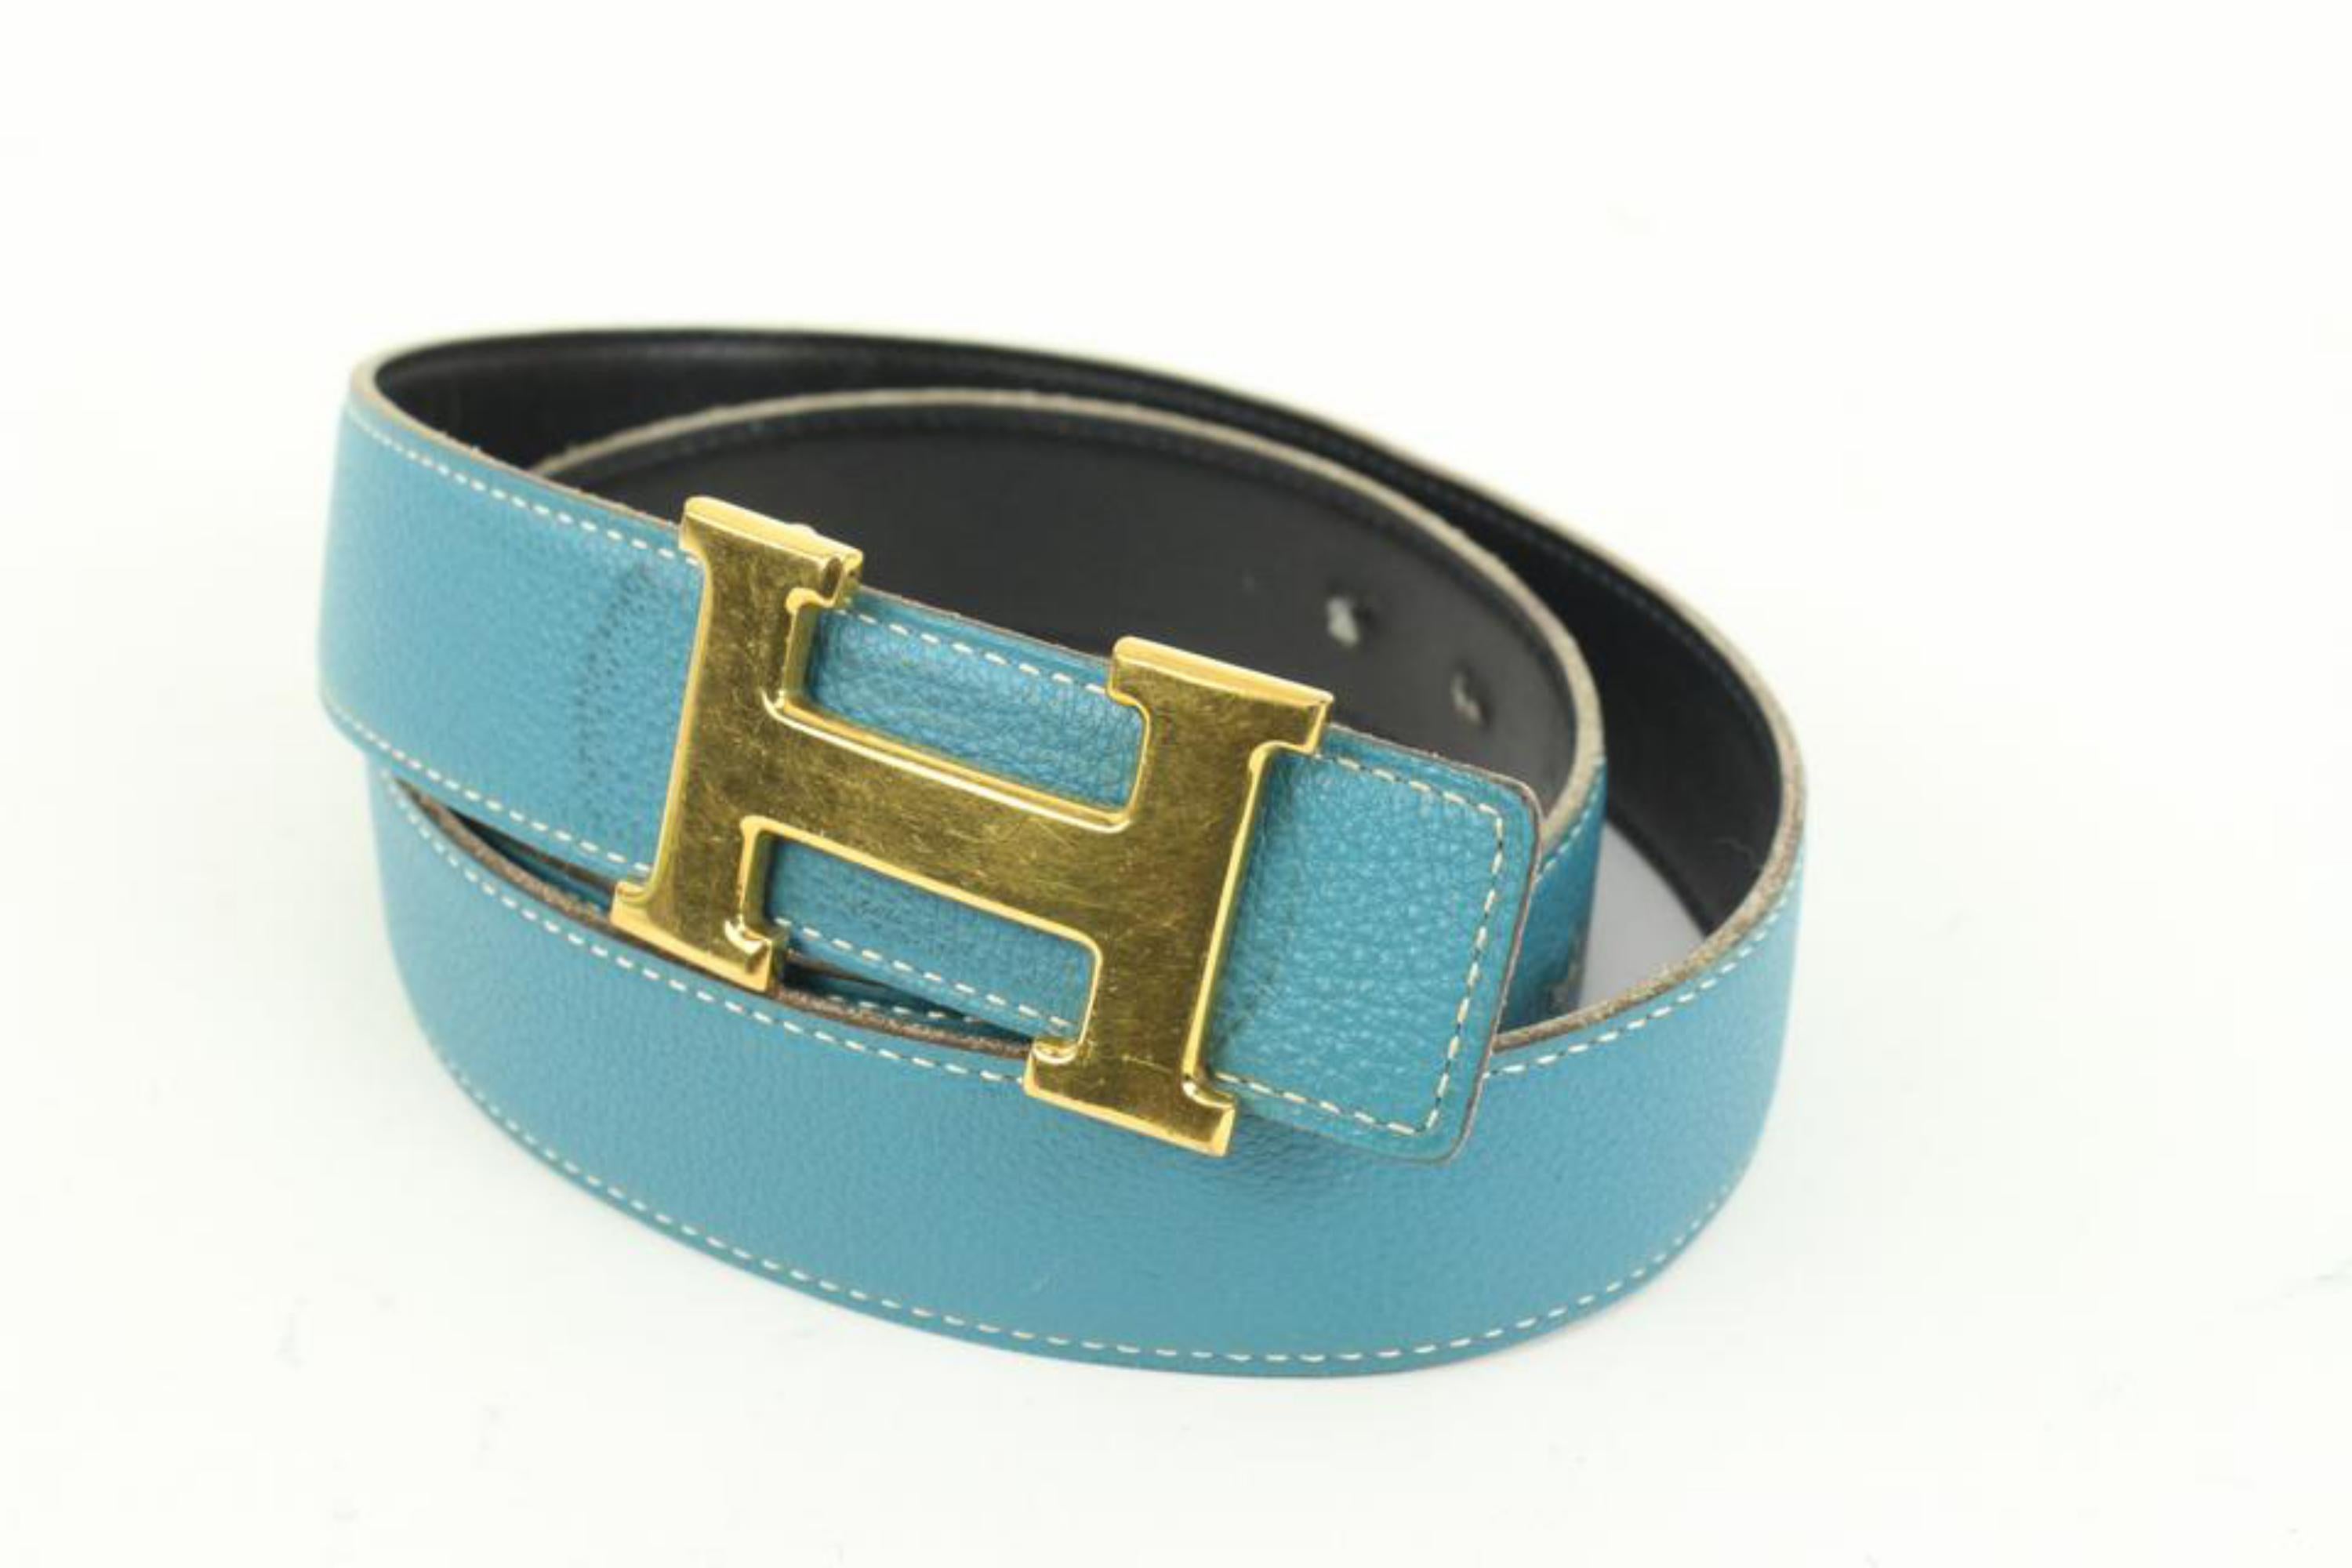 Kit ceinture logo H réversible 32 mm noir x bleu Jean x or 41h55
Code de date/Numéro de série : J in s Square
Fabriqué en : France
Mesures : Longueur :  37.4